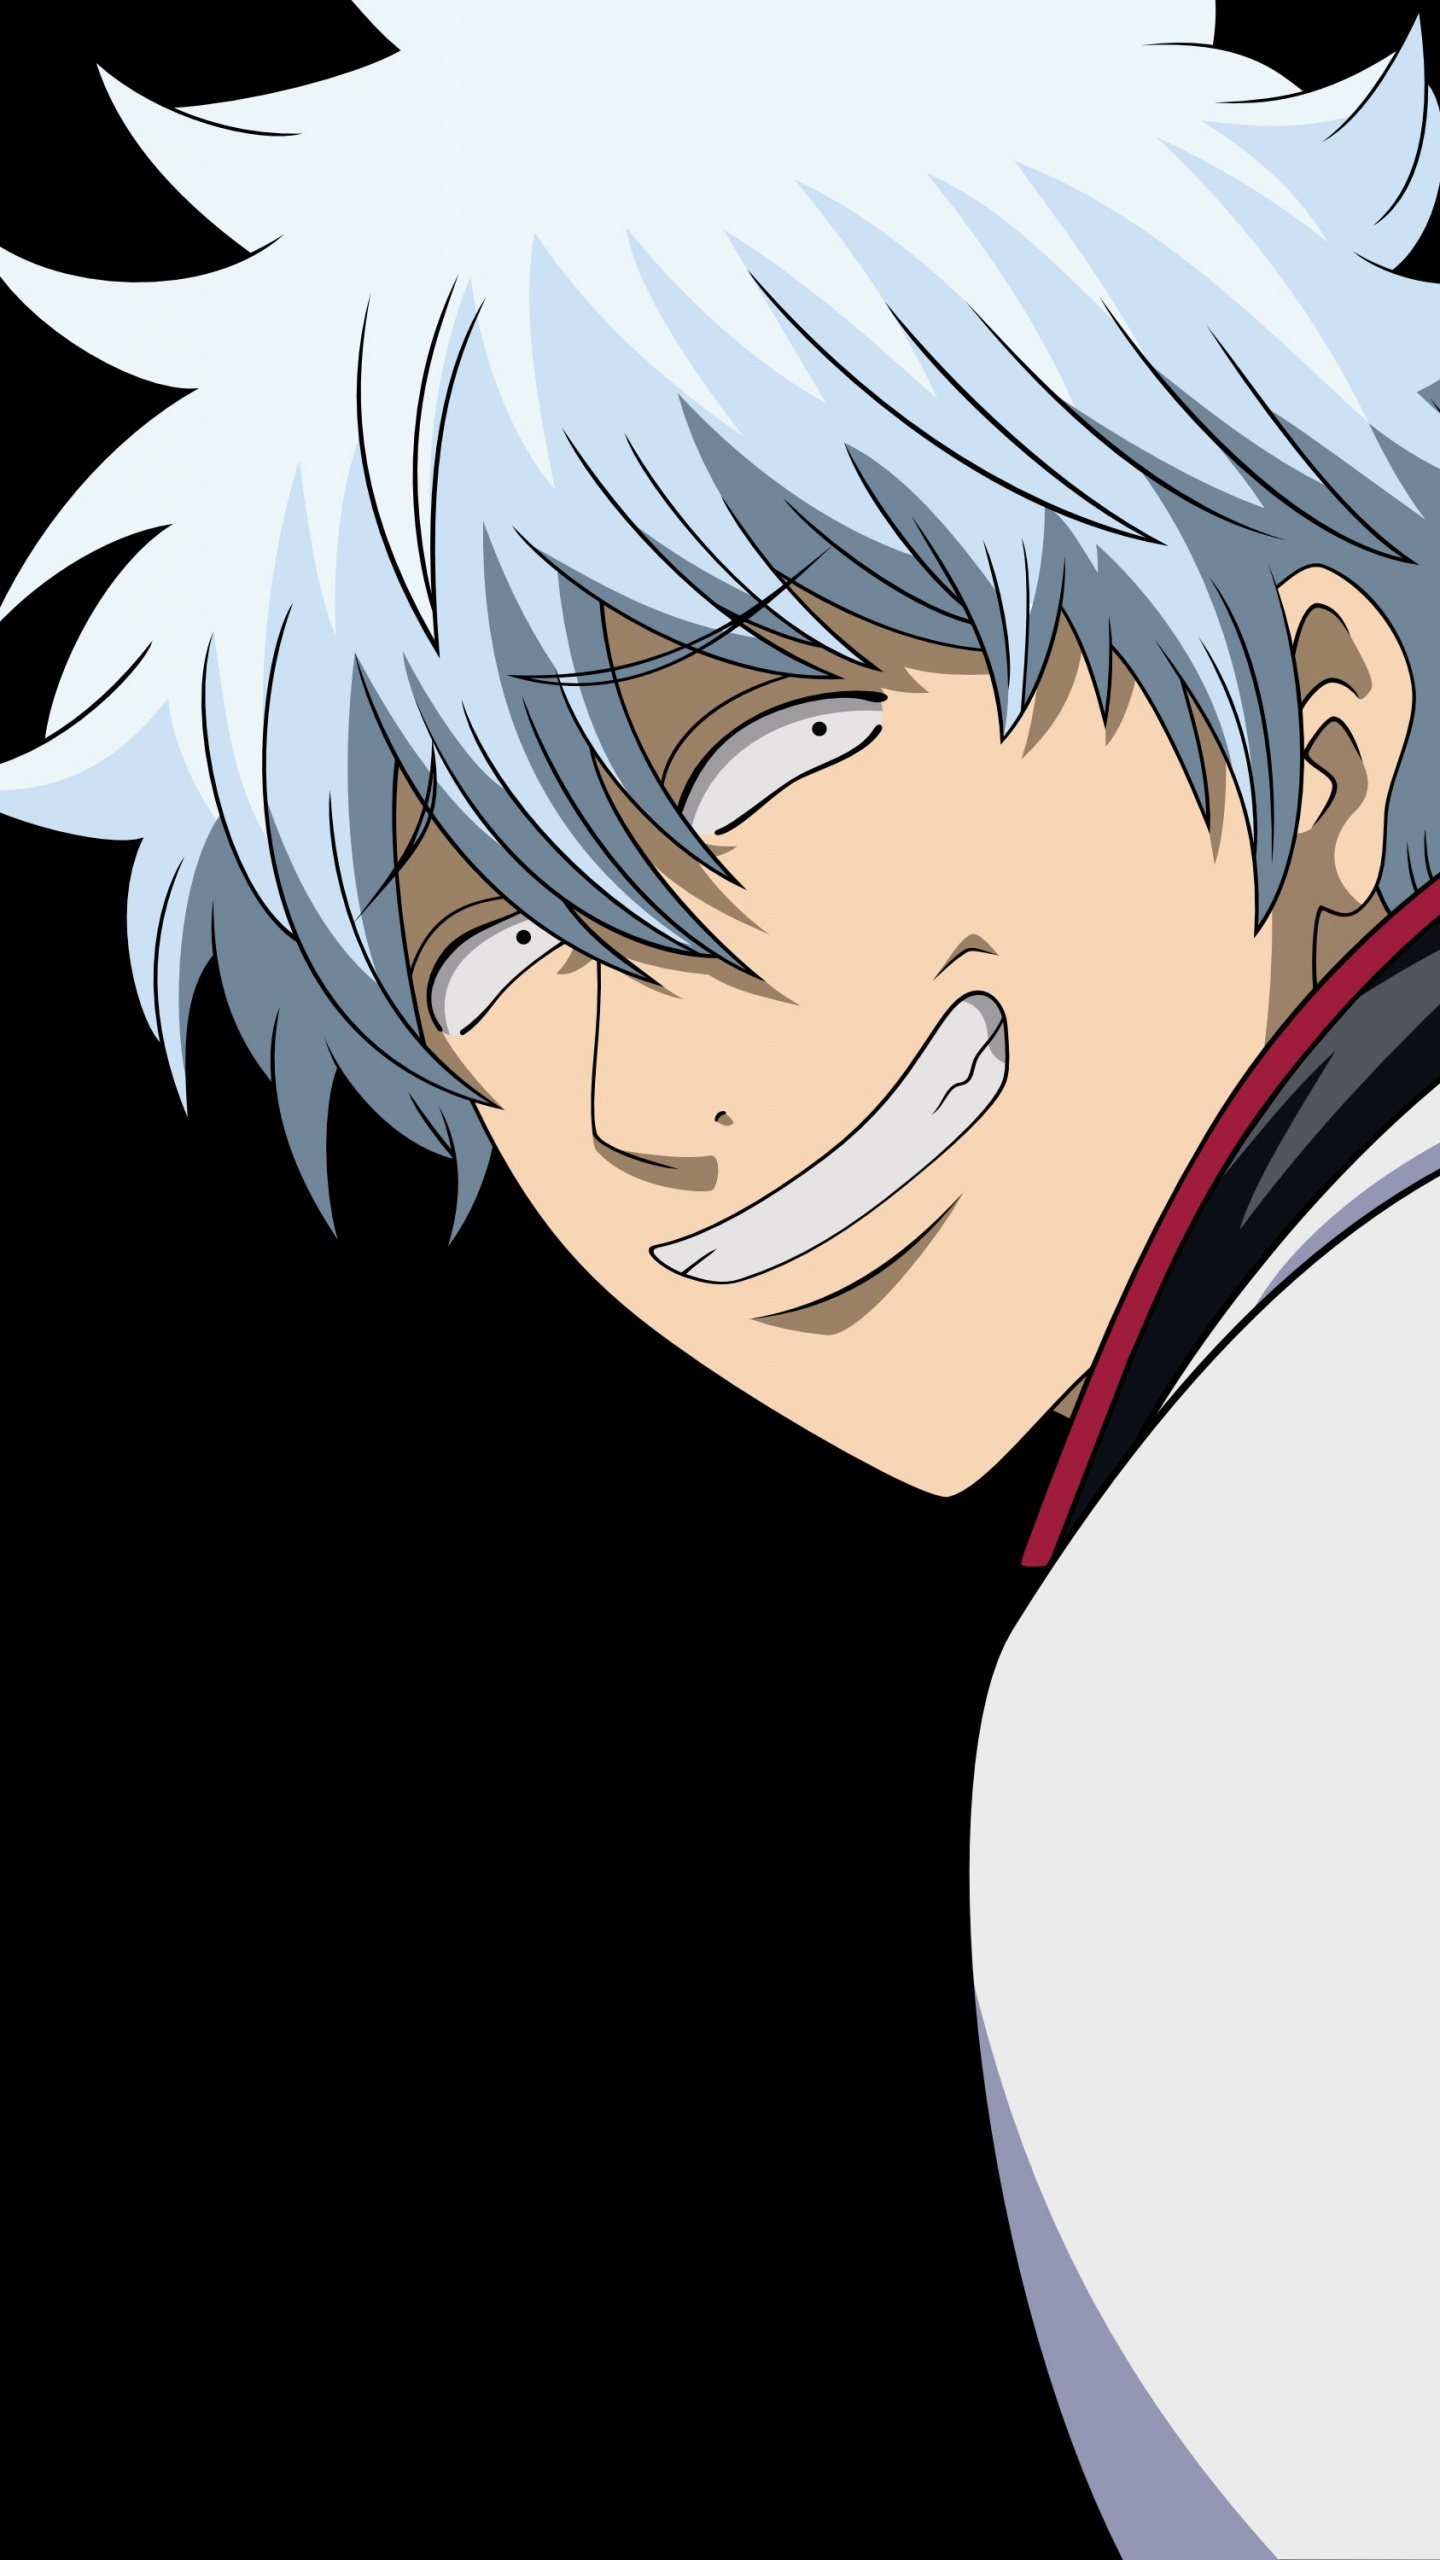 Personaje de Anime Masculino de Pelo Blanco. Wallpaper in 1440x2560 Resolution